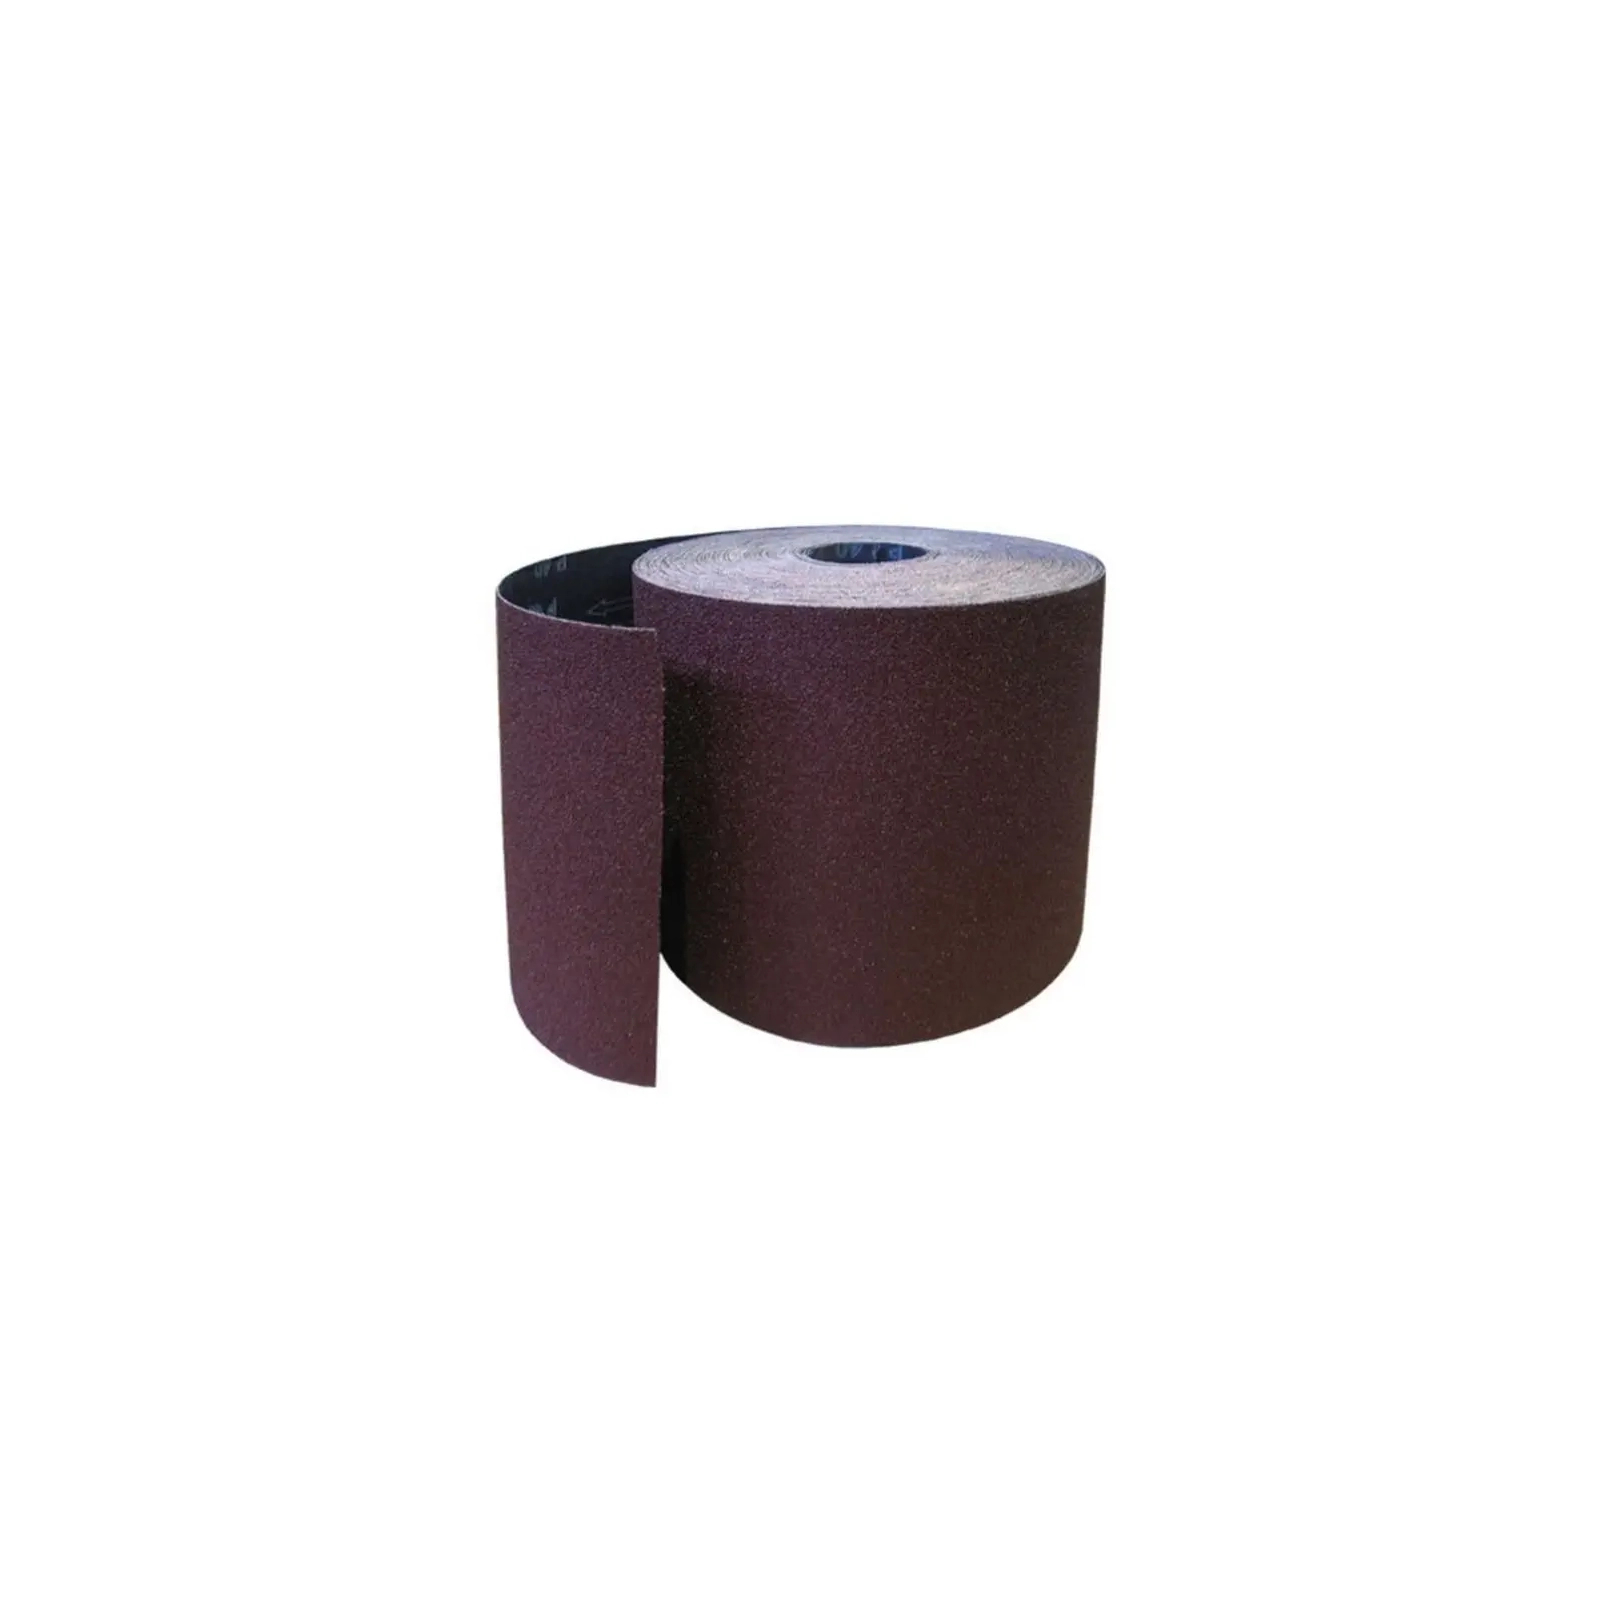 Наждачная бумага HAISSER бумажная основа – 115мм x 5м, зерно 150 (118535)